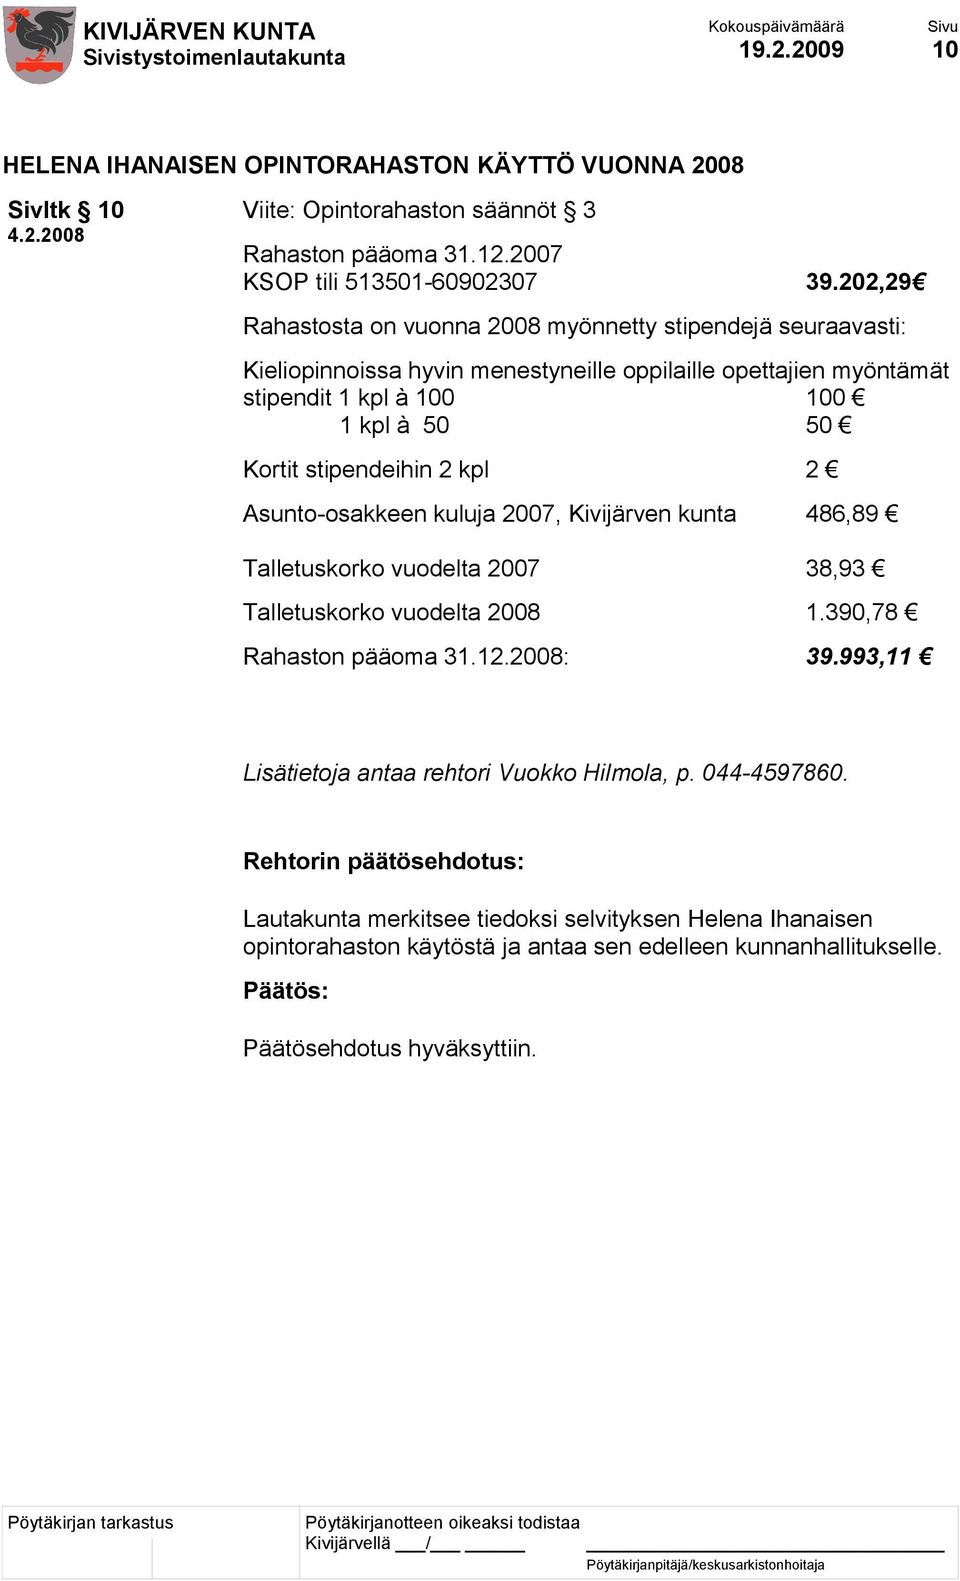 stipendeihin 2 kpl 2 Asunto-osakkeen kuluja 2007, Kivijärven kunta 486,89 Talletuskorko vuodelta 2007 38,93 Talletuskorko vuodelta 2008 1.390,78 Rahaston pääoma 31.12.2008: 39.